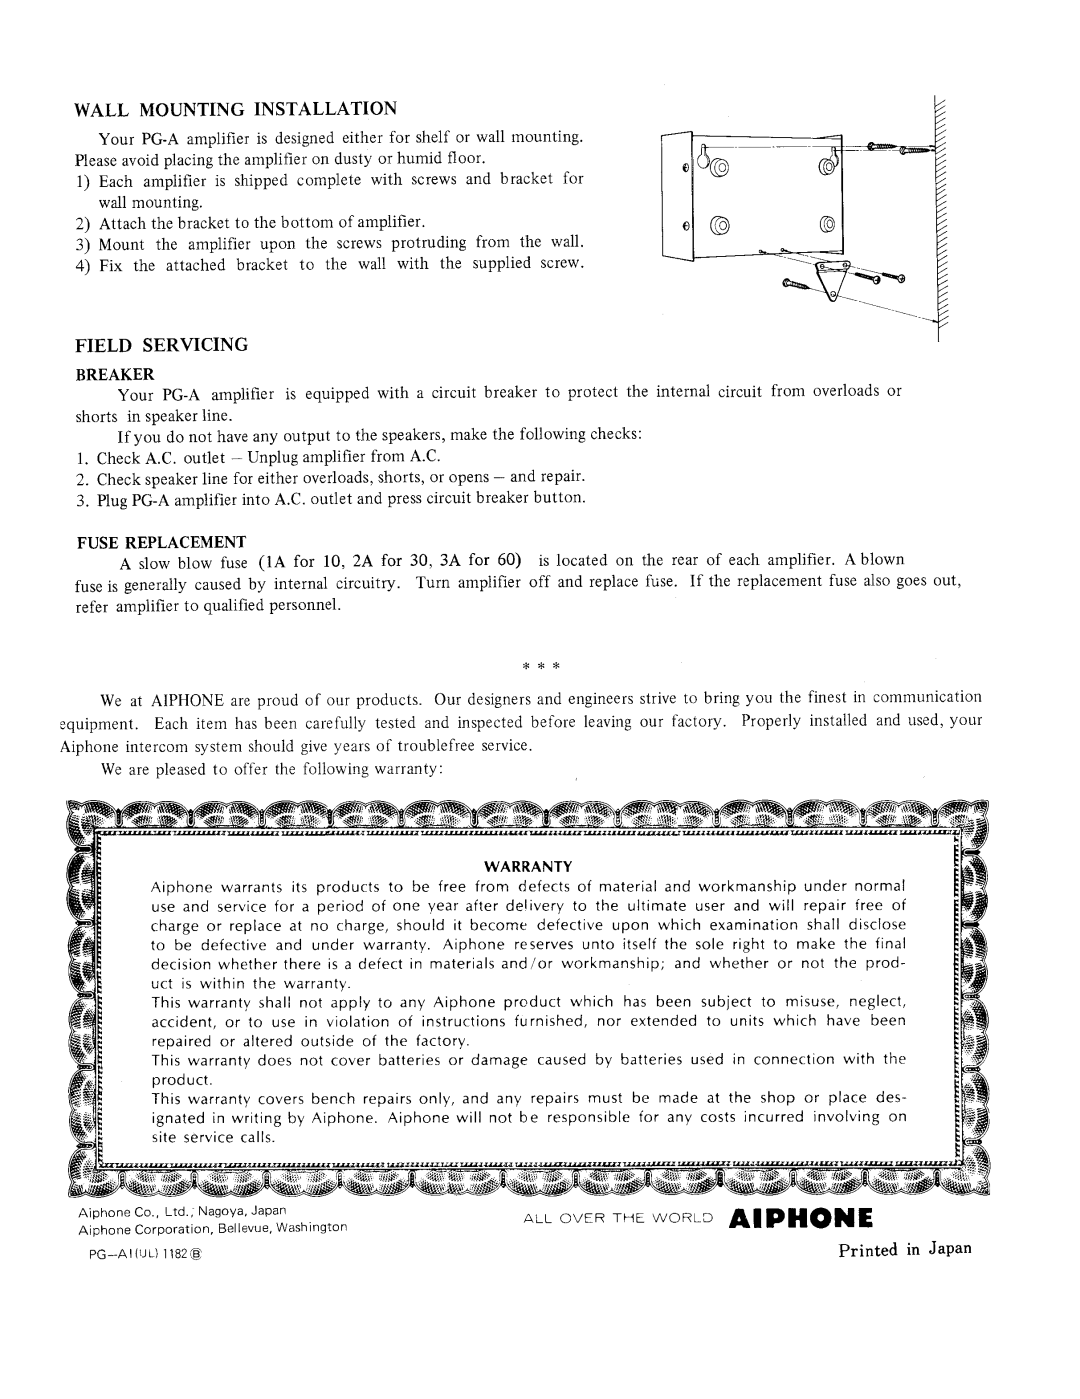 Aiphone PG-10A manual 